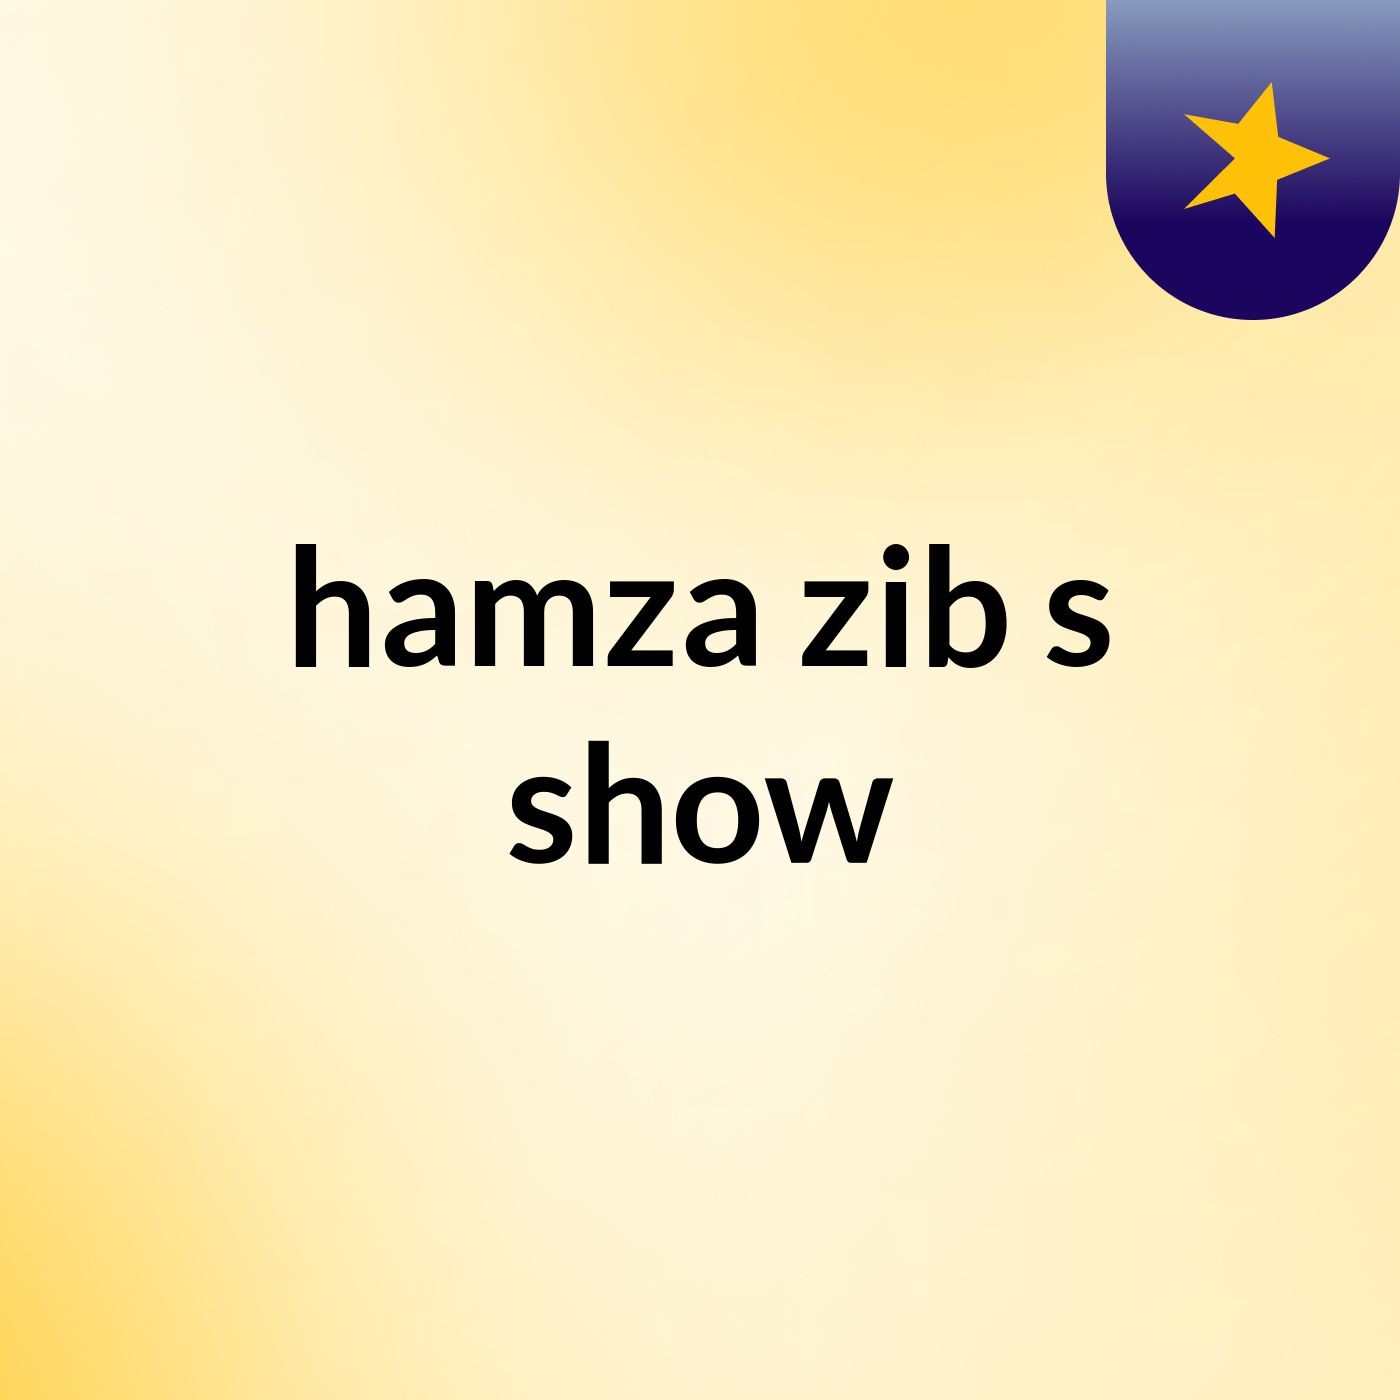 hamza zib's show